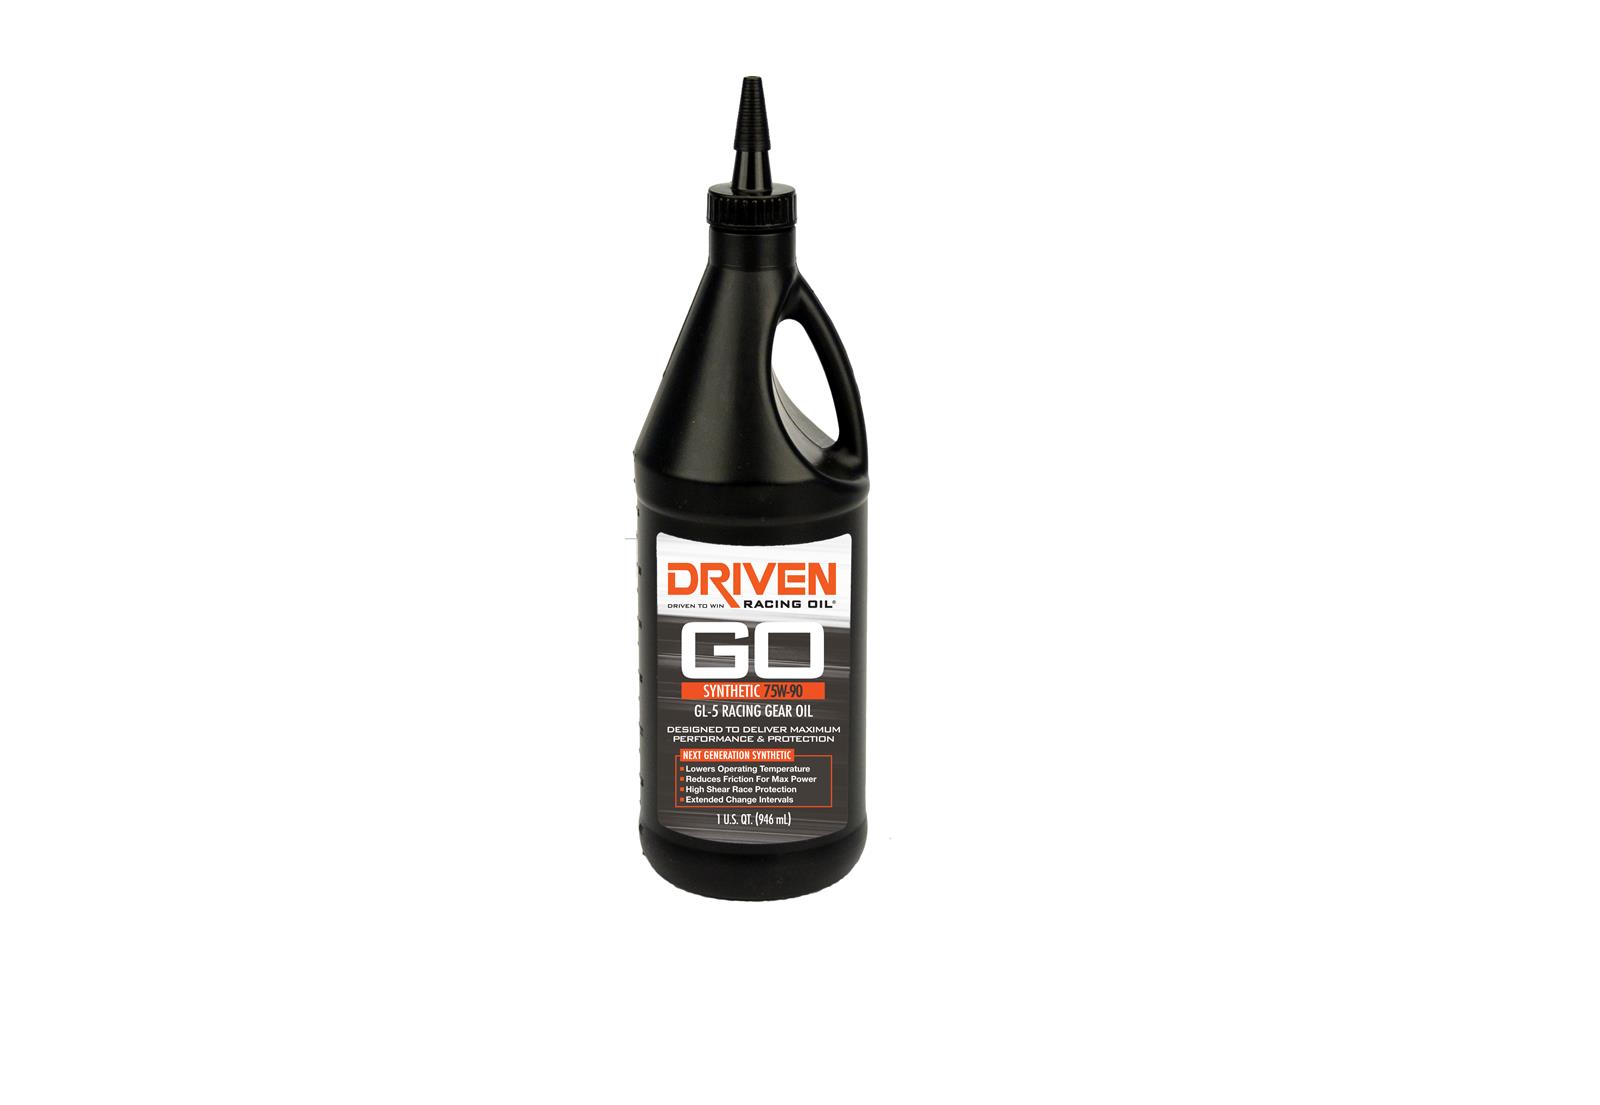 Driven Racing Oil 05530 GL-5 Synthetic 75W-90 Gear Oil (1 qt. bottle)